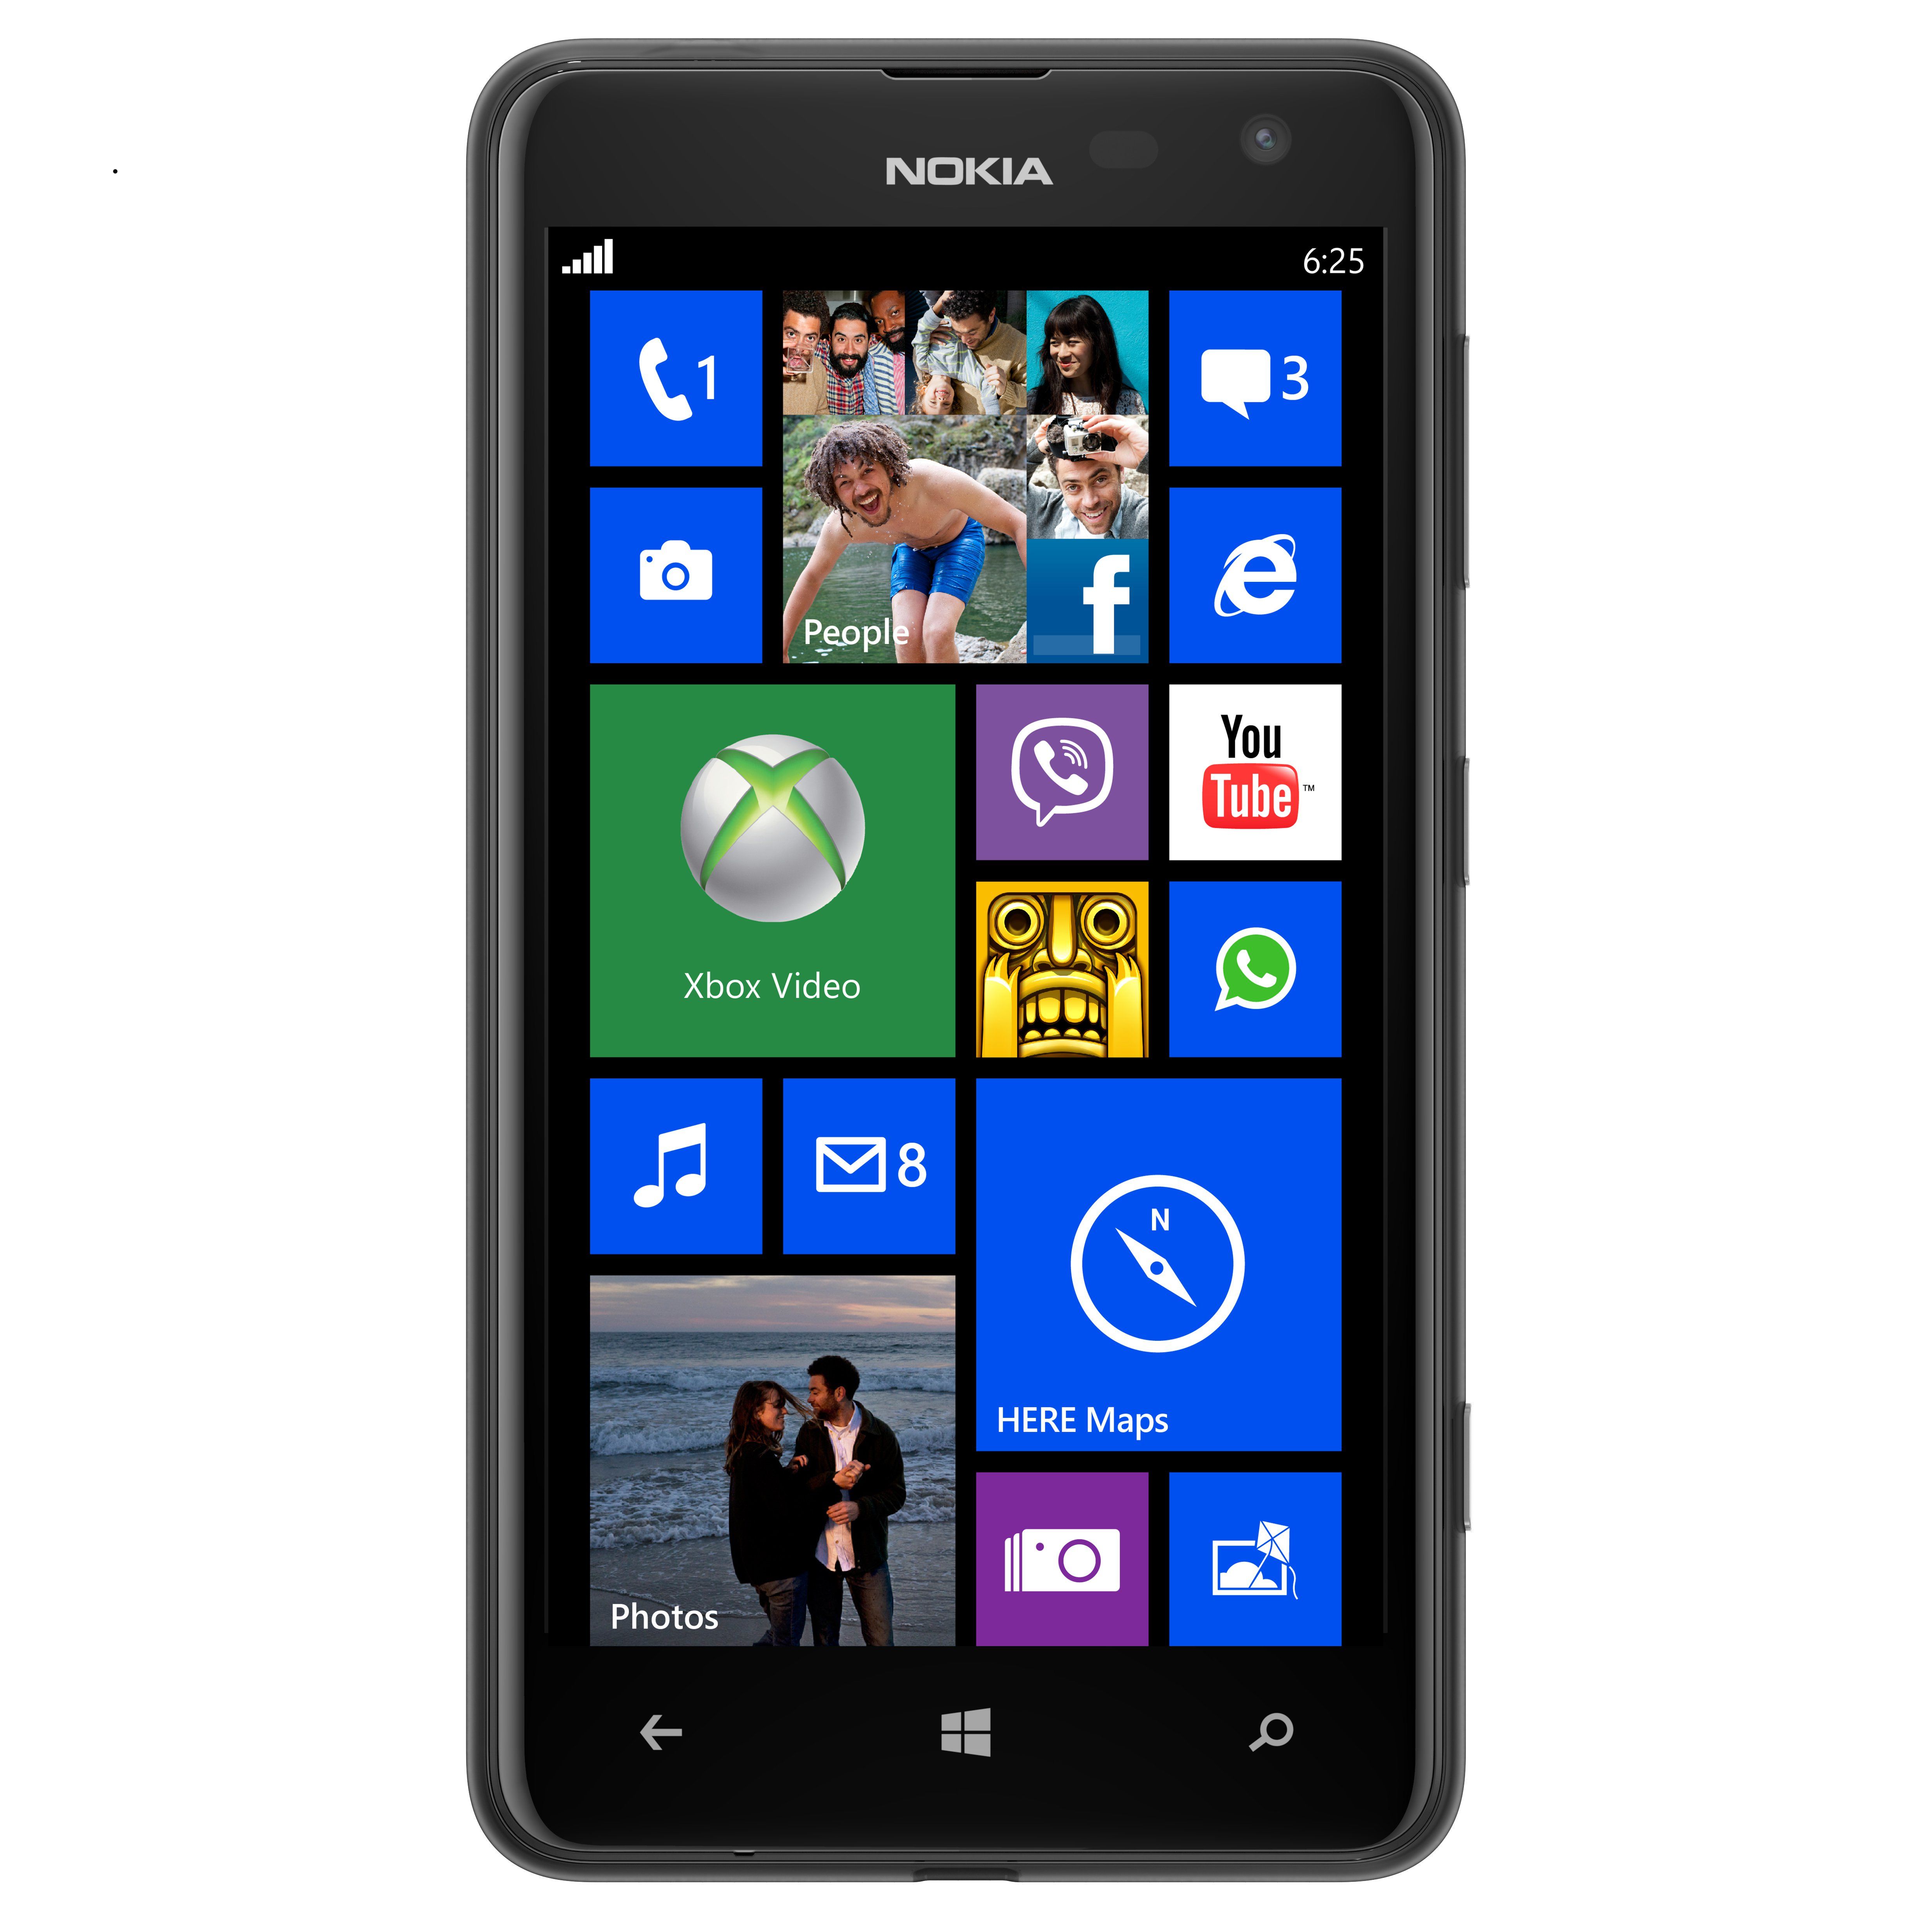 Видео телефона нокиа. Nokia 625. Nokia Lumia 625. Нокиа люмия 625. Смартфон Nokia Lumia 625.